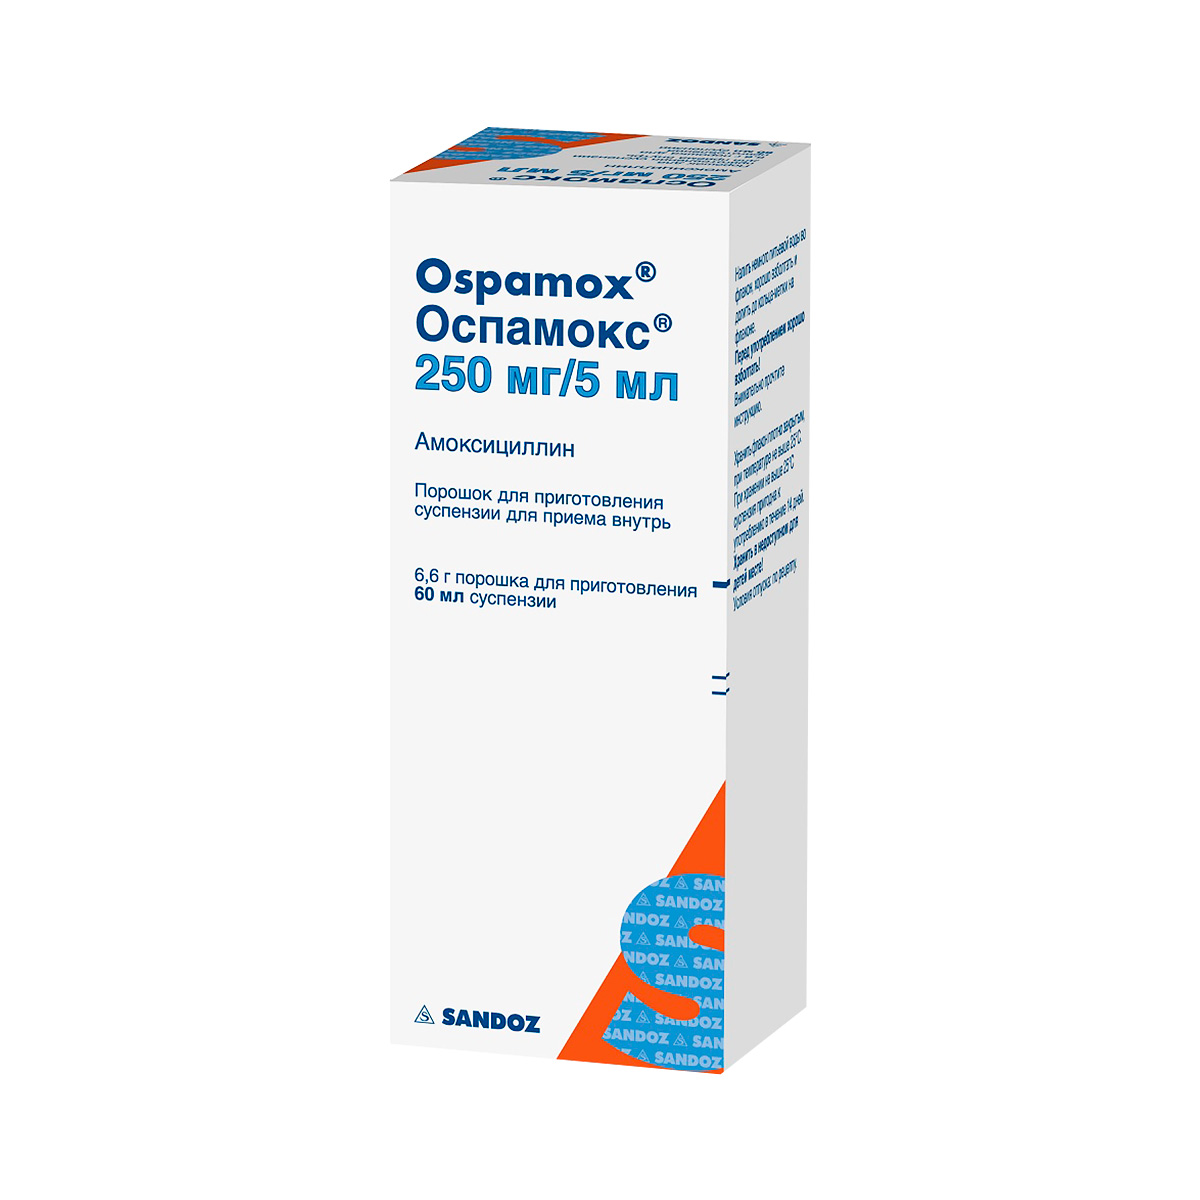 Оспамокс 250 мг/5 мл порошок для приготовления суспензии для приема внутрь 60 мл флакон 1 шт